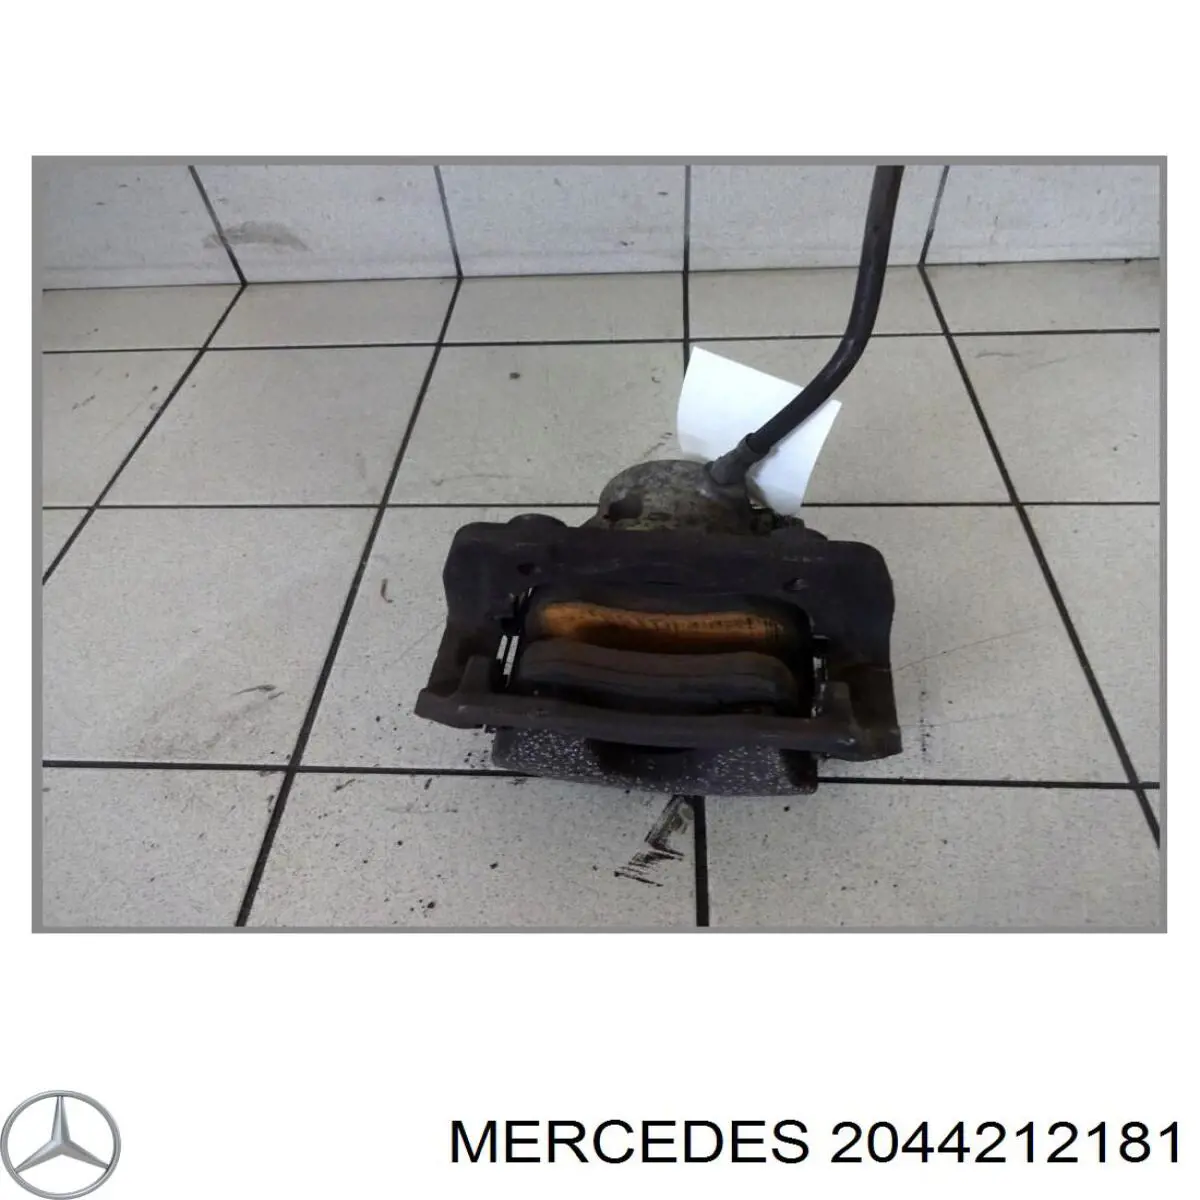 2044210181 Mercedes pinza de freno delantera izquierda